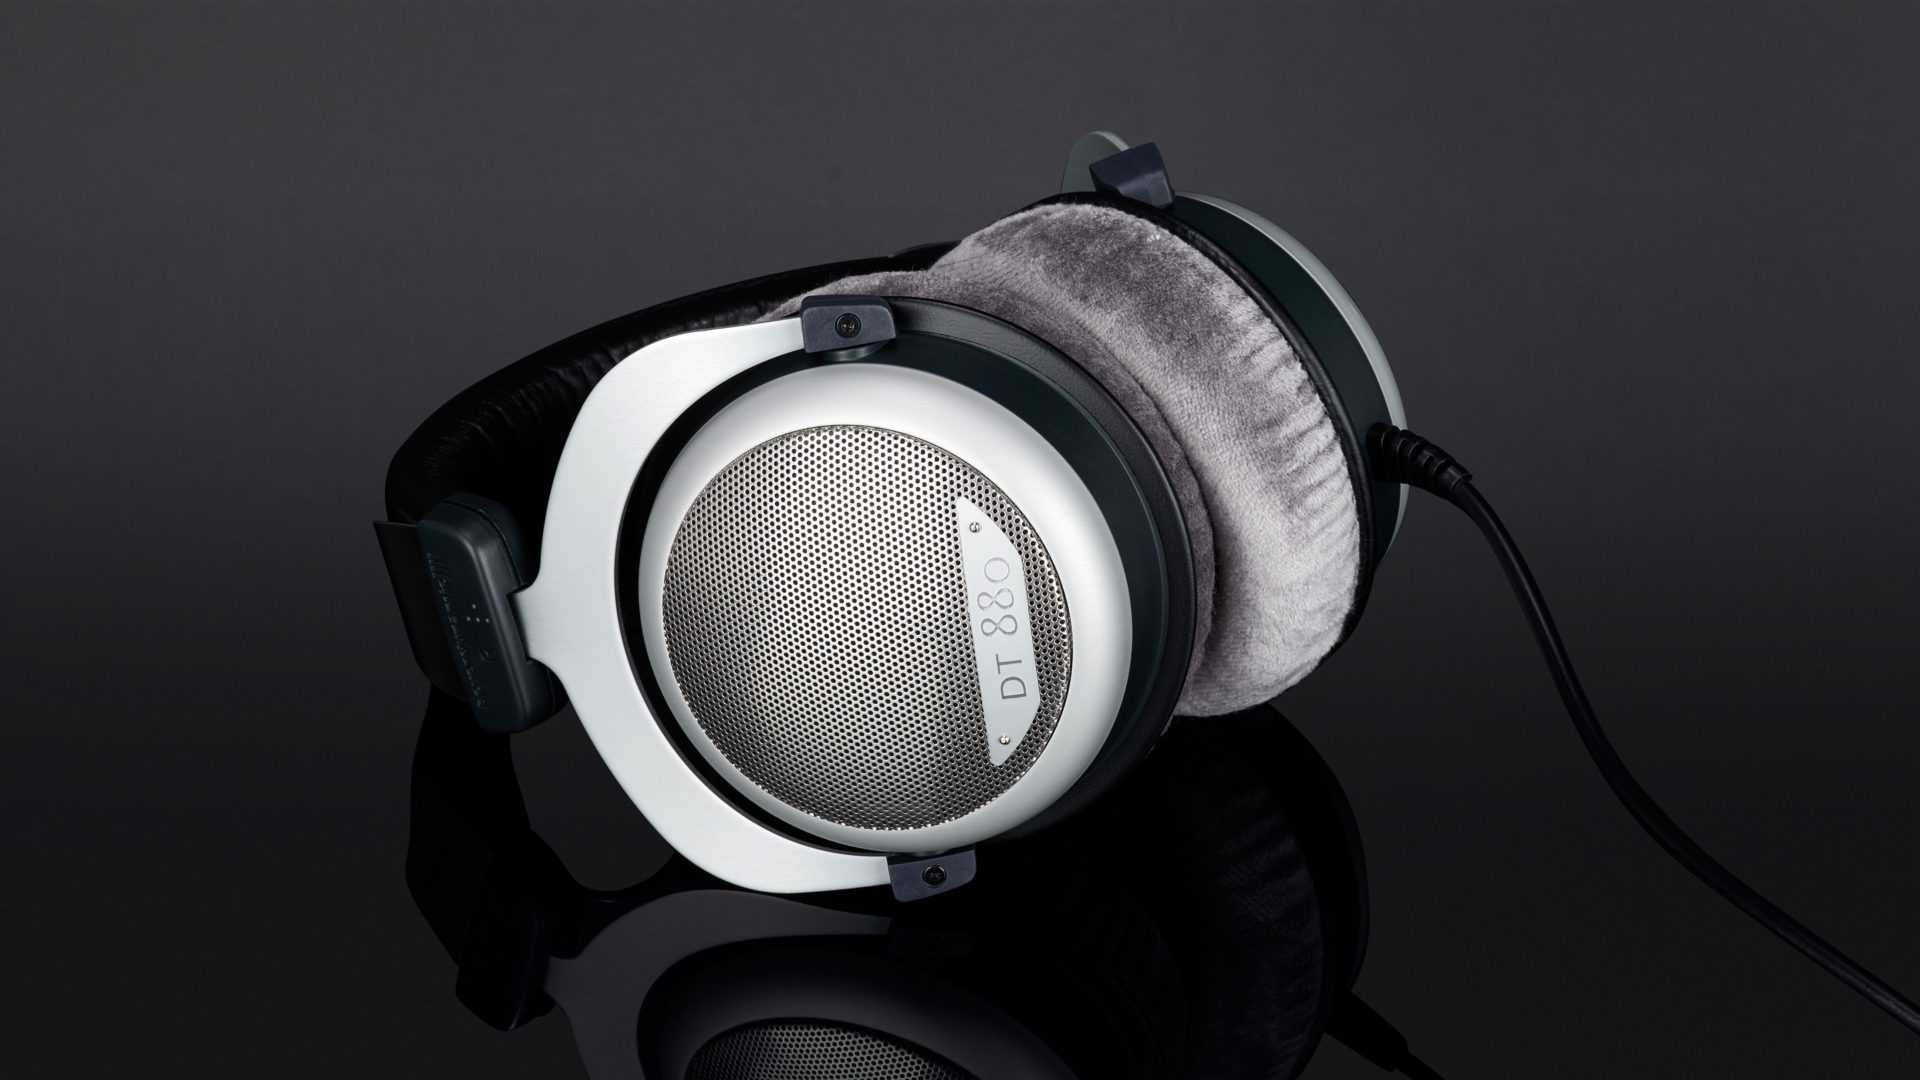 Sennheiser hd 650 vs beyerdynamic dt990 pro: which headphone speaks to you?